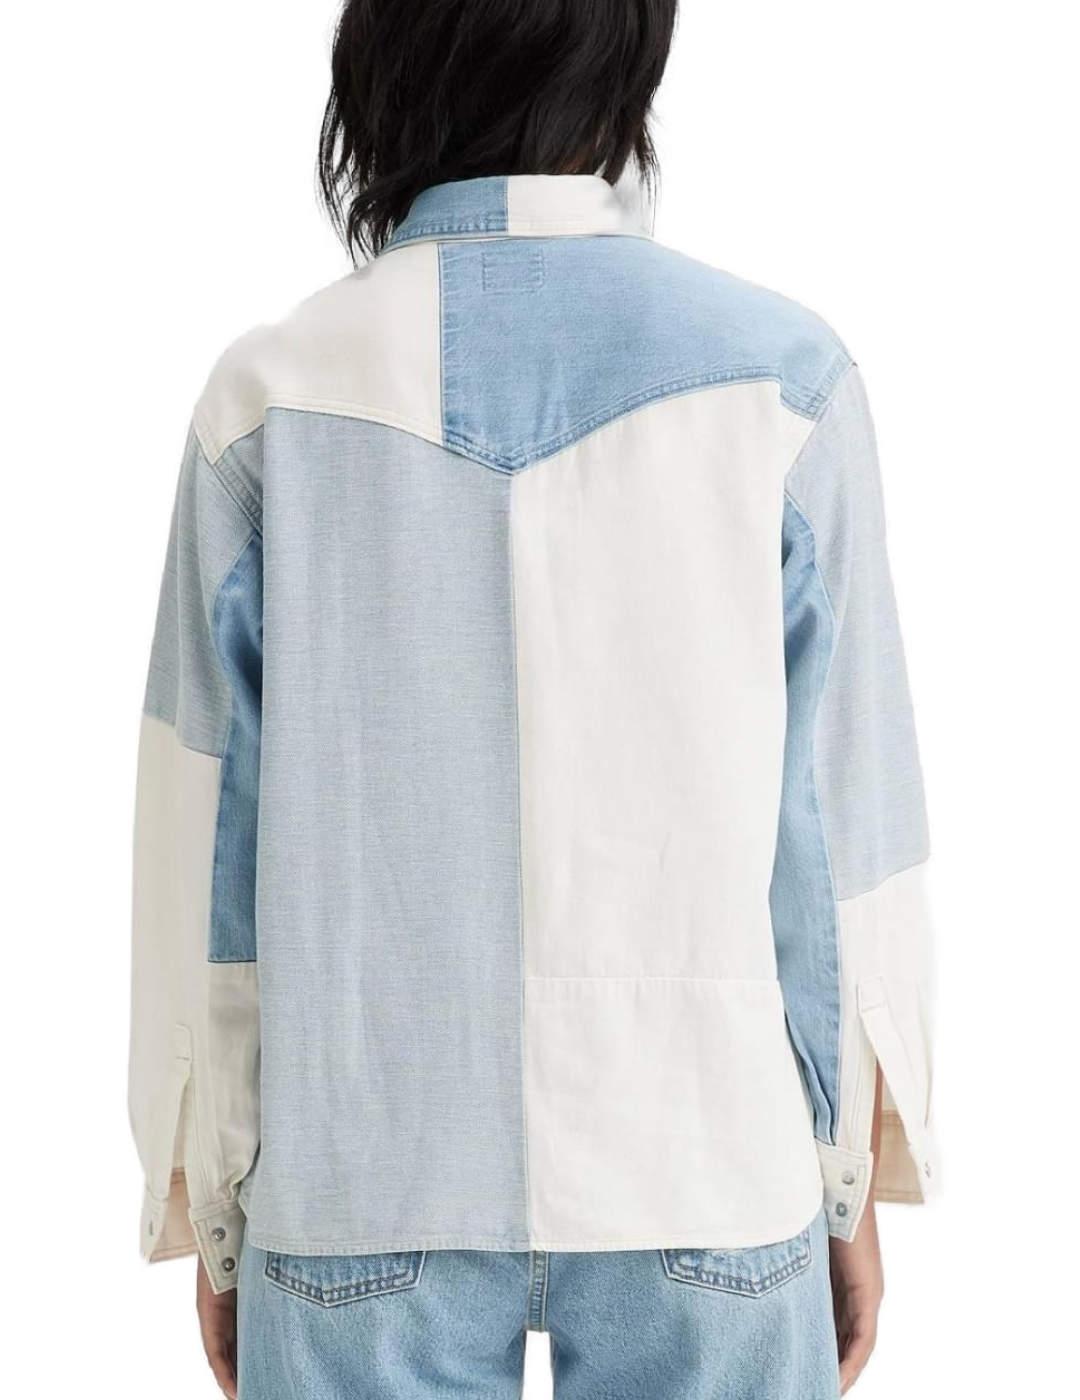 Camisa Levi´s manga larga vaquera patchwork blanco de mujer